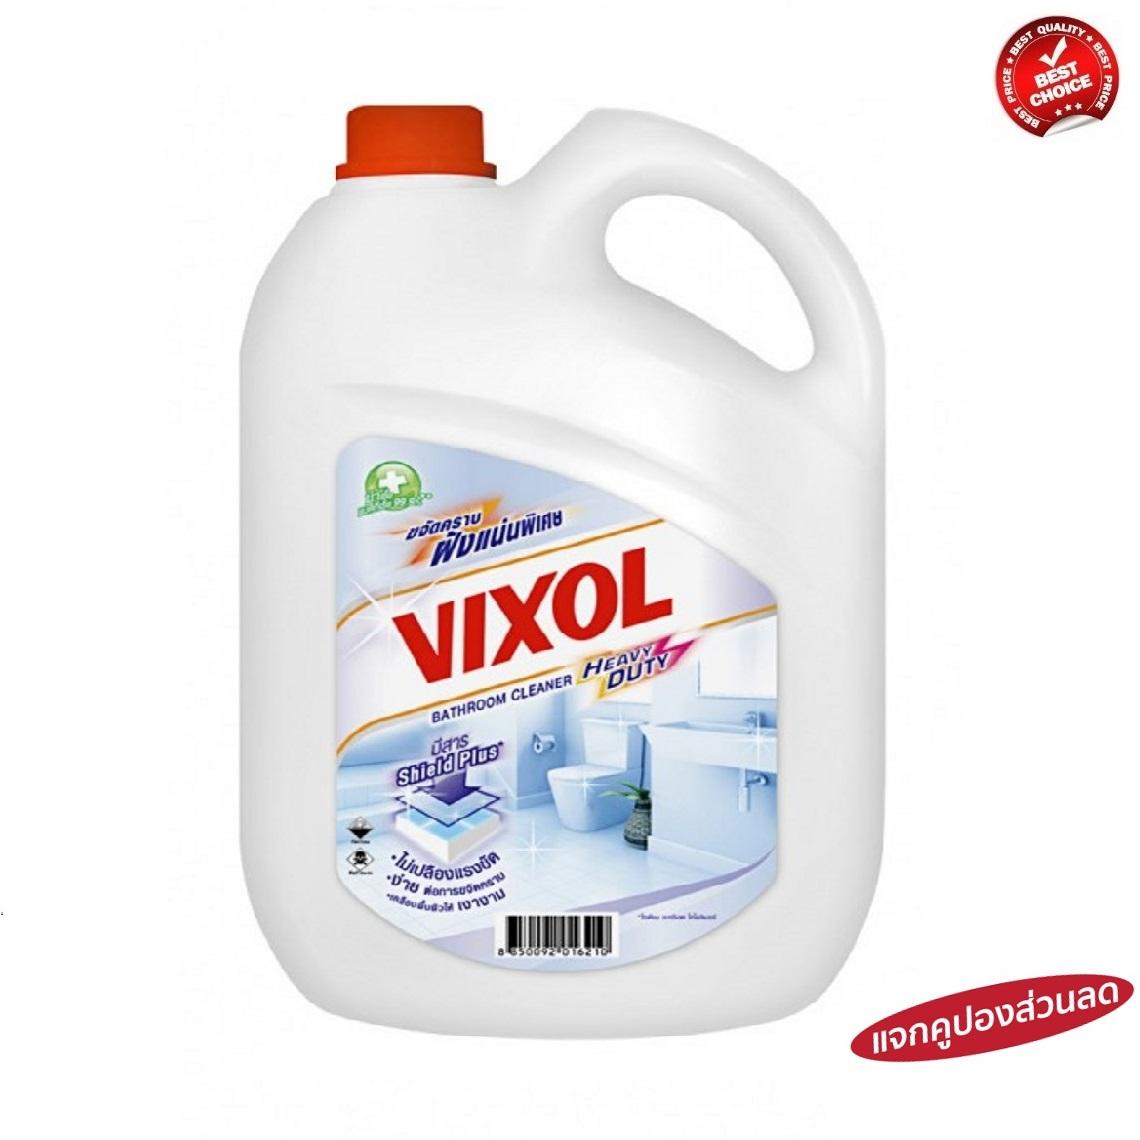 VIXOL ขนาด3500 มล. วิกซอล น้ำยาล้างห้องน้ำ สำหรับคราบติดแน่น White สีขาว